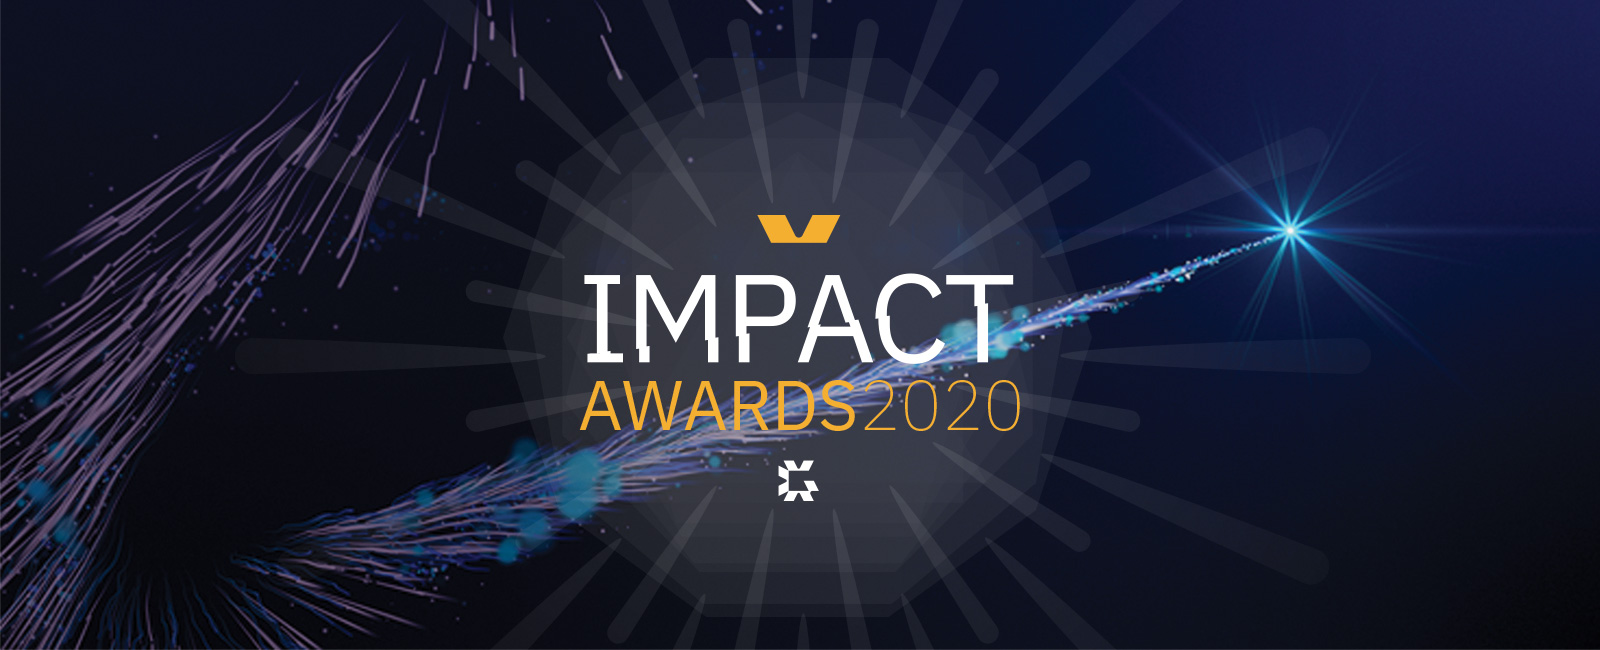 インパクト アワード 2020: 受賞者の方々、おめでとうございます!